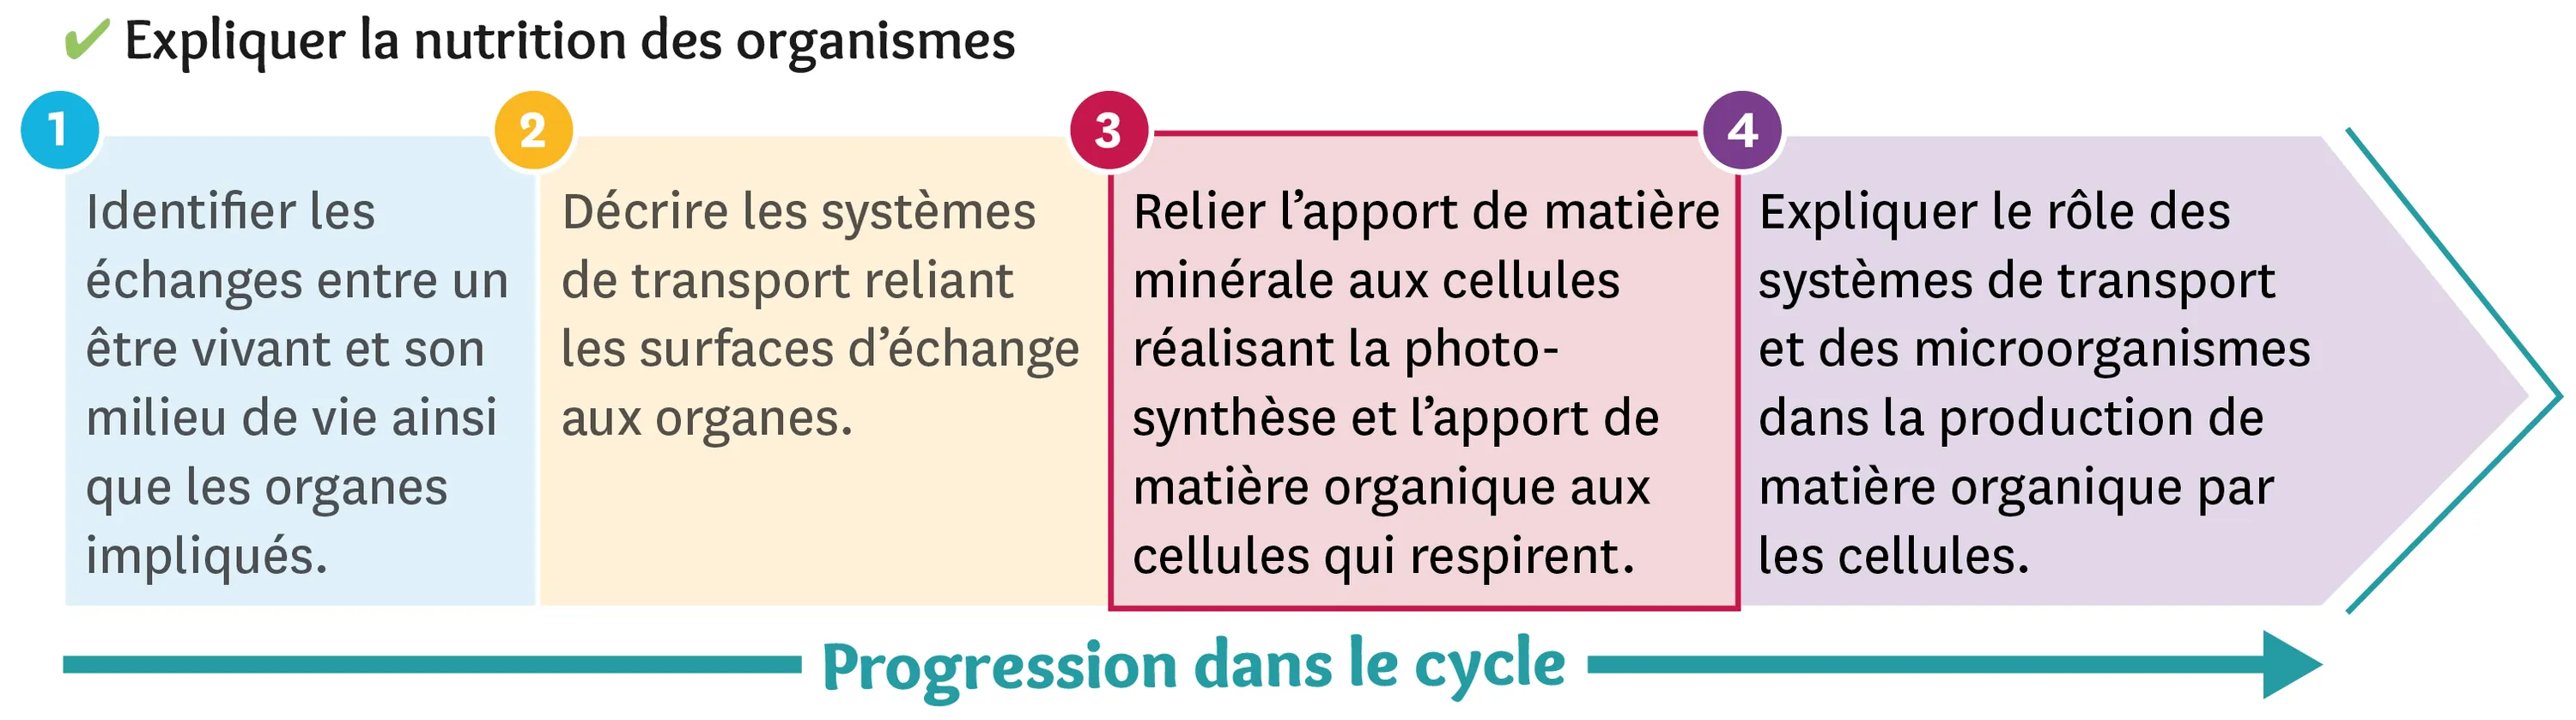 Illustration de la progression dans le cycle: étape 1 : Relier l'apport de matière minérale aux cellules réalisant la photosynthèse et l'apport de matière organique aux cellules qui respirent.